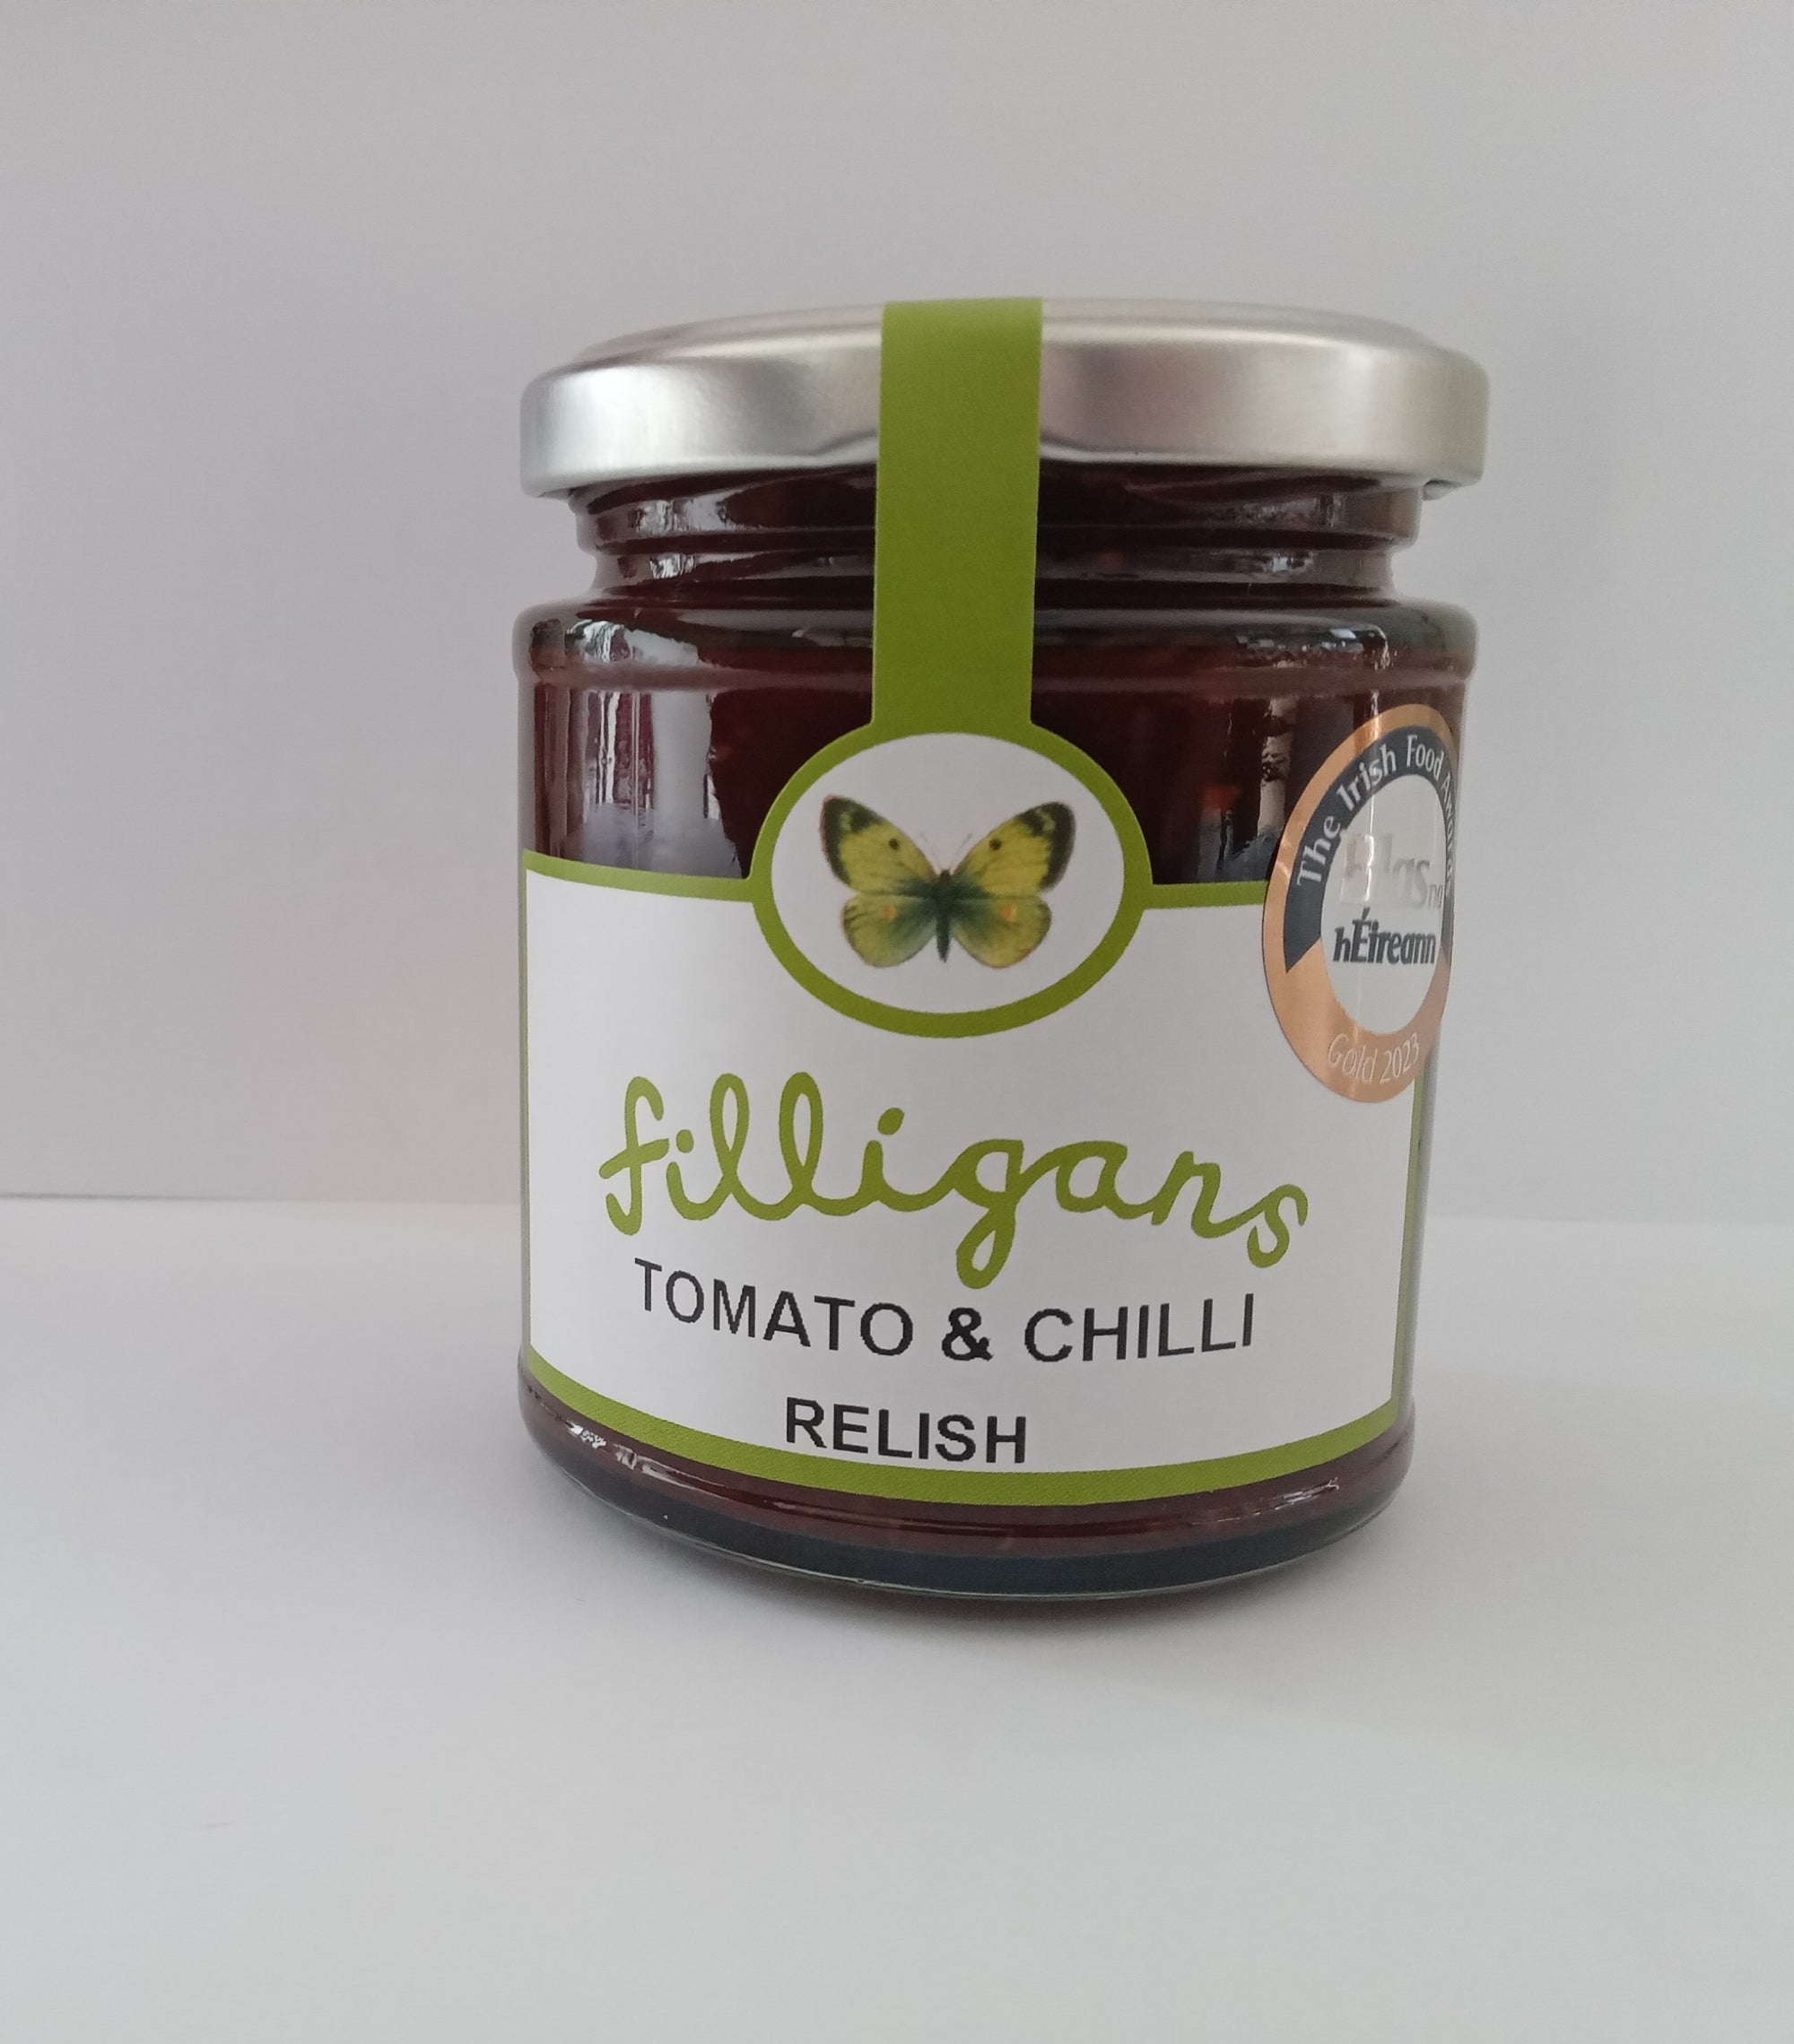 Tomato & Chilli Relish 200g